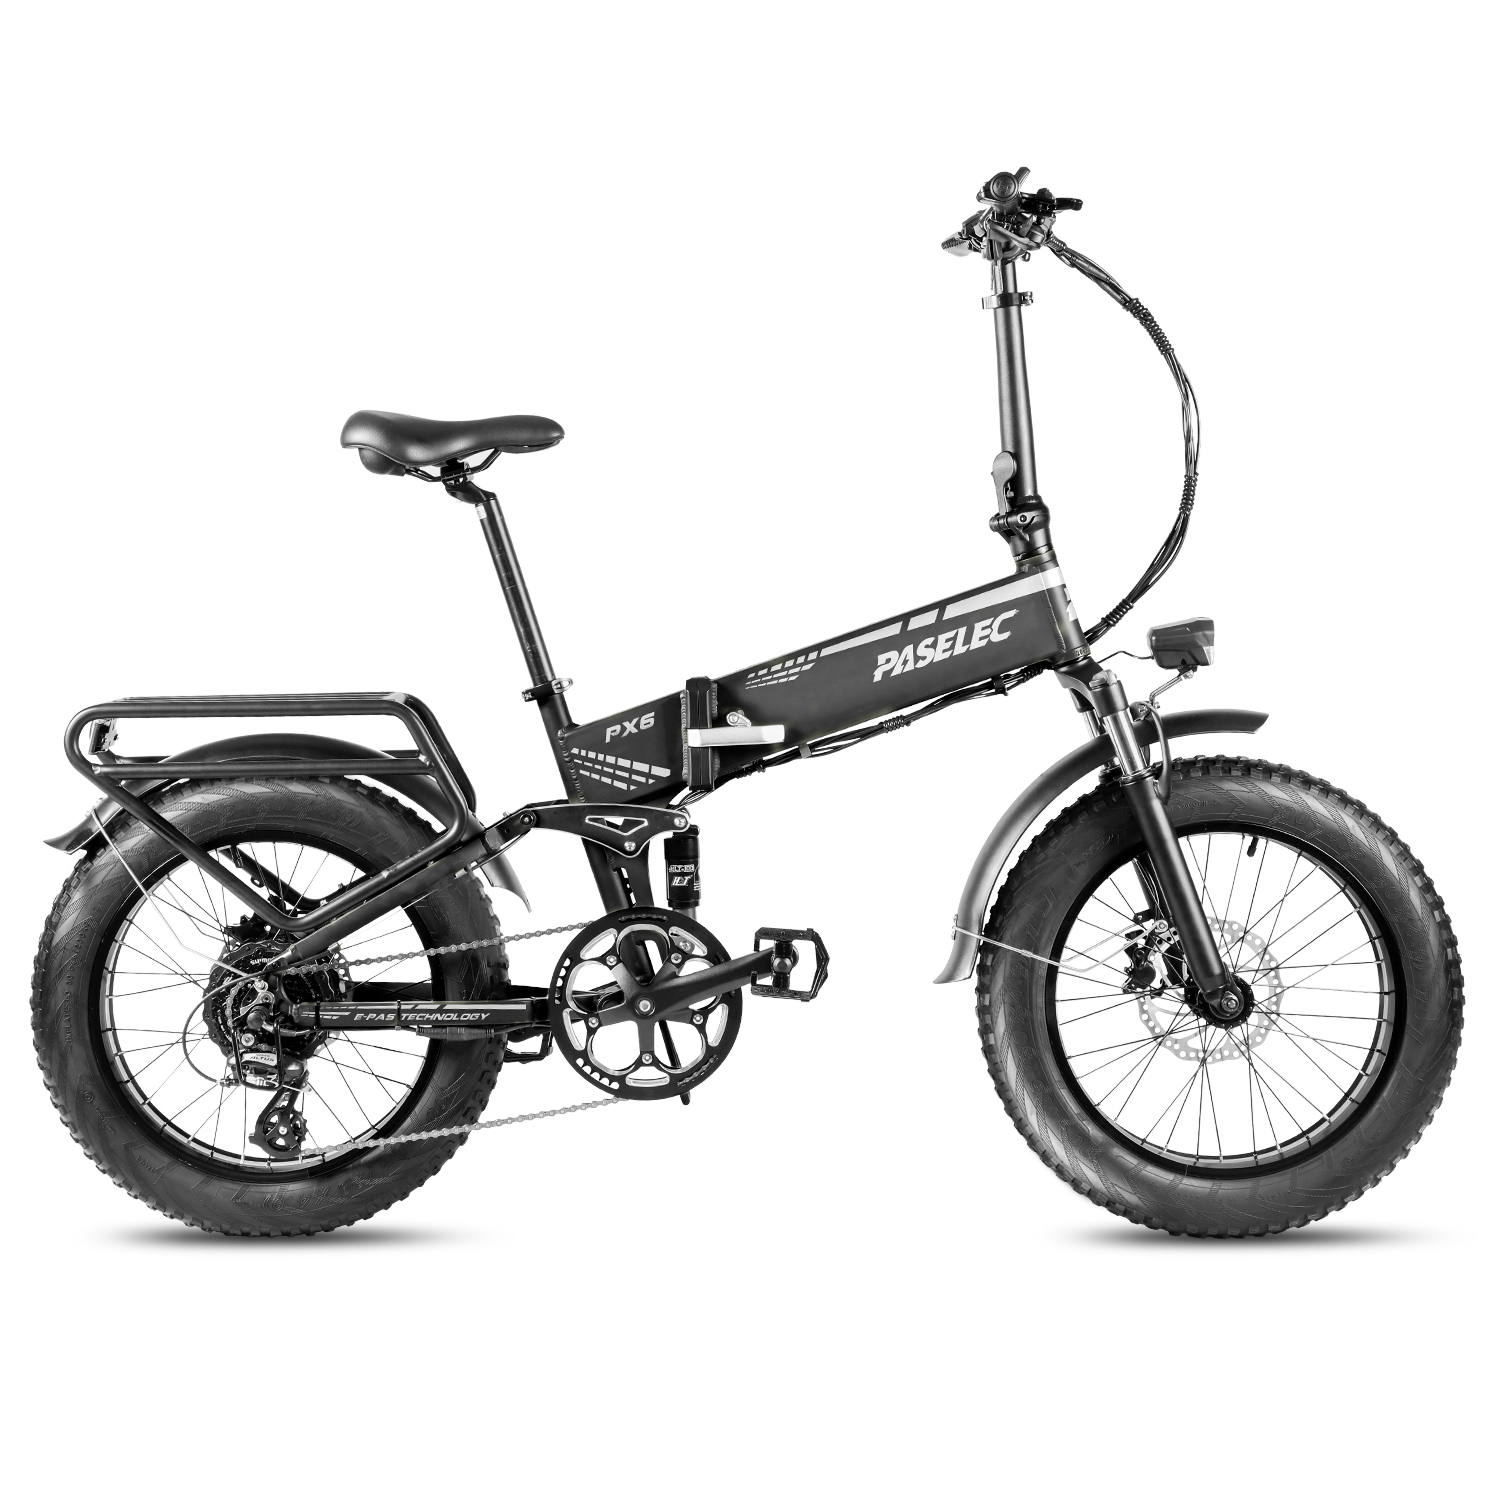 Paselec PX6 Folding Electric Bike